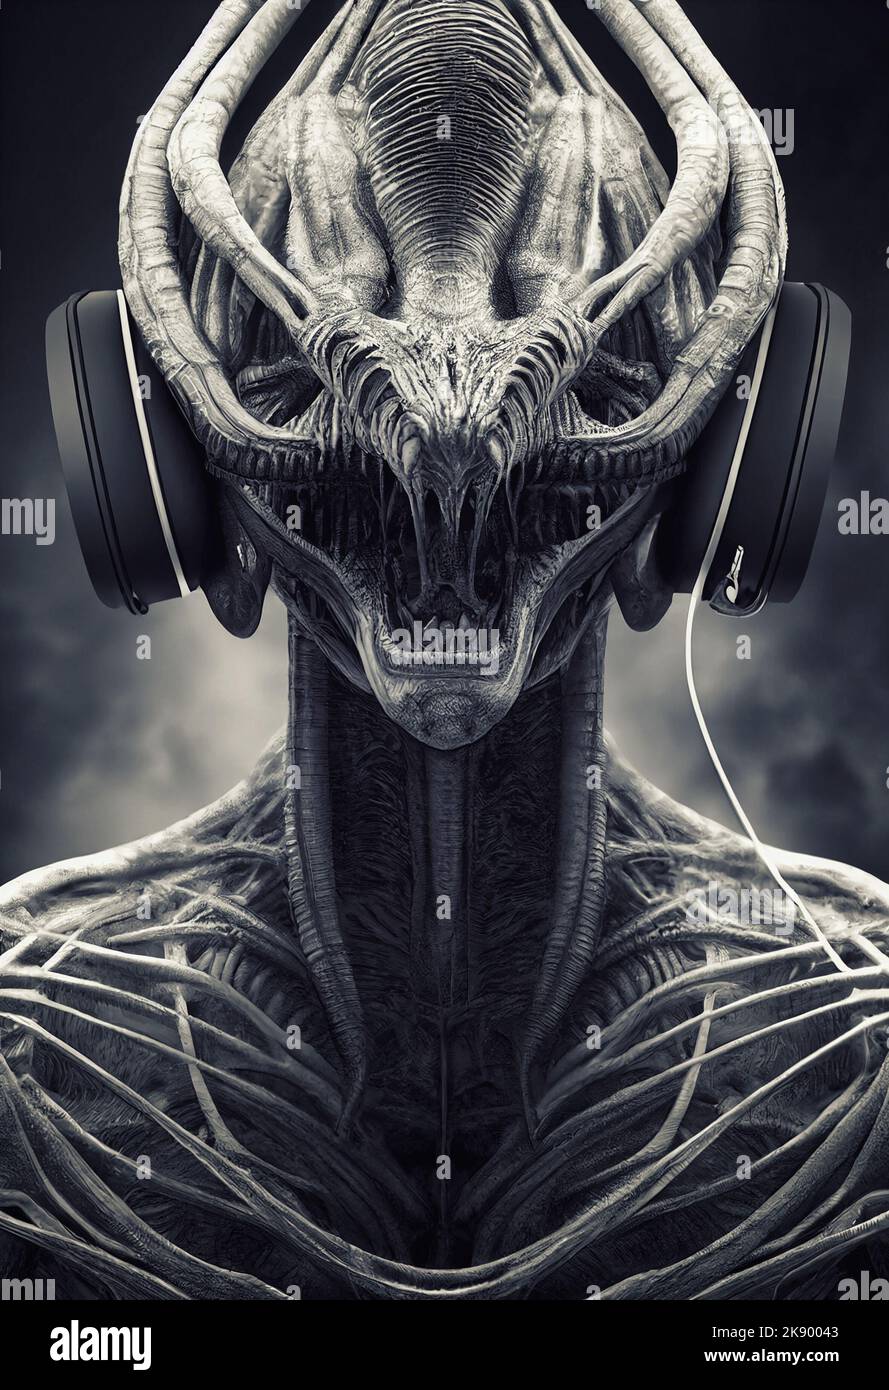 Une illustration en 3D d'un extraterrestre de fantaisie comme un concept de science-fiction Banque D'Images